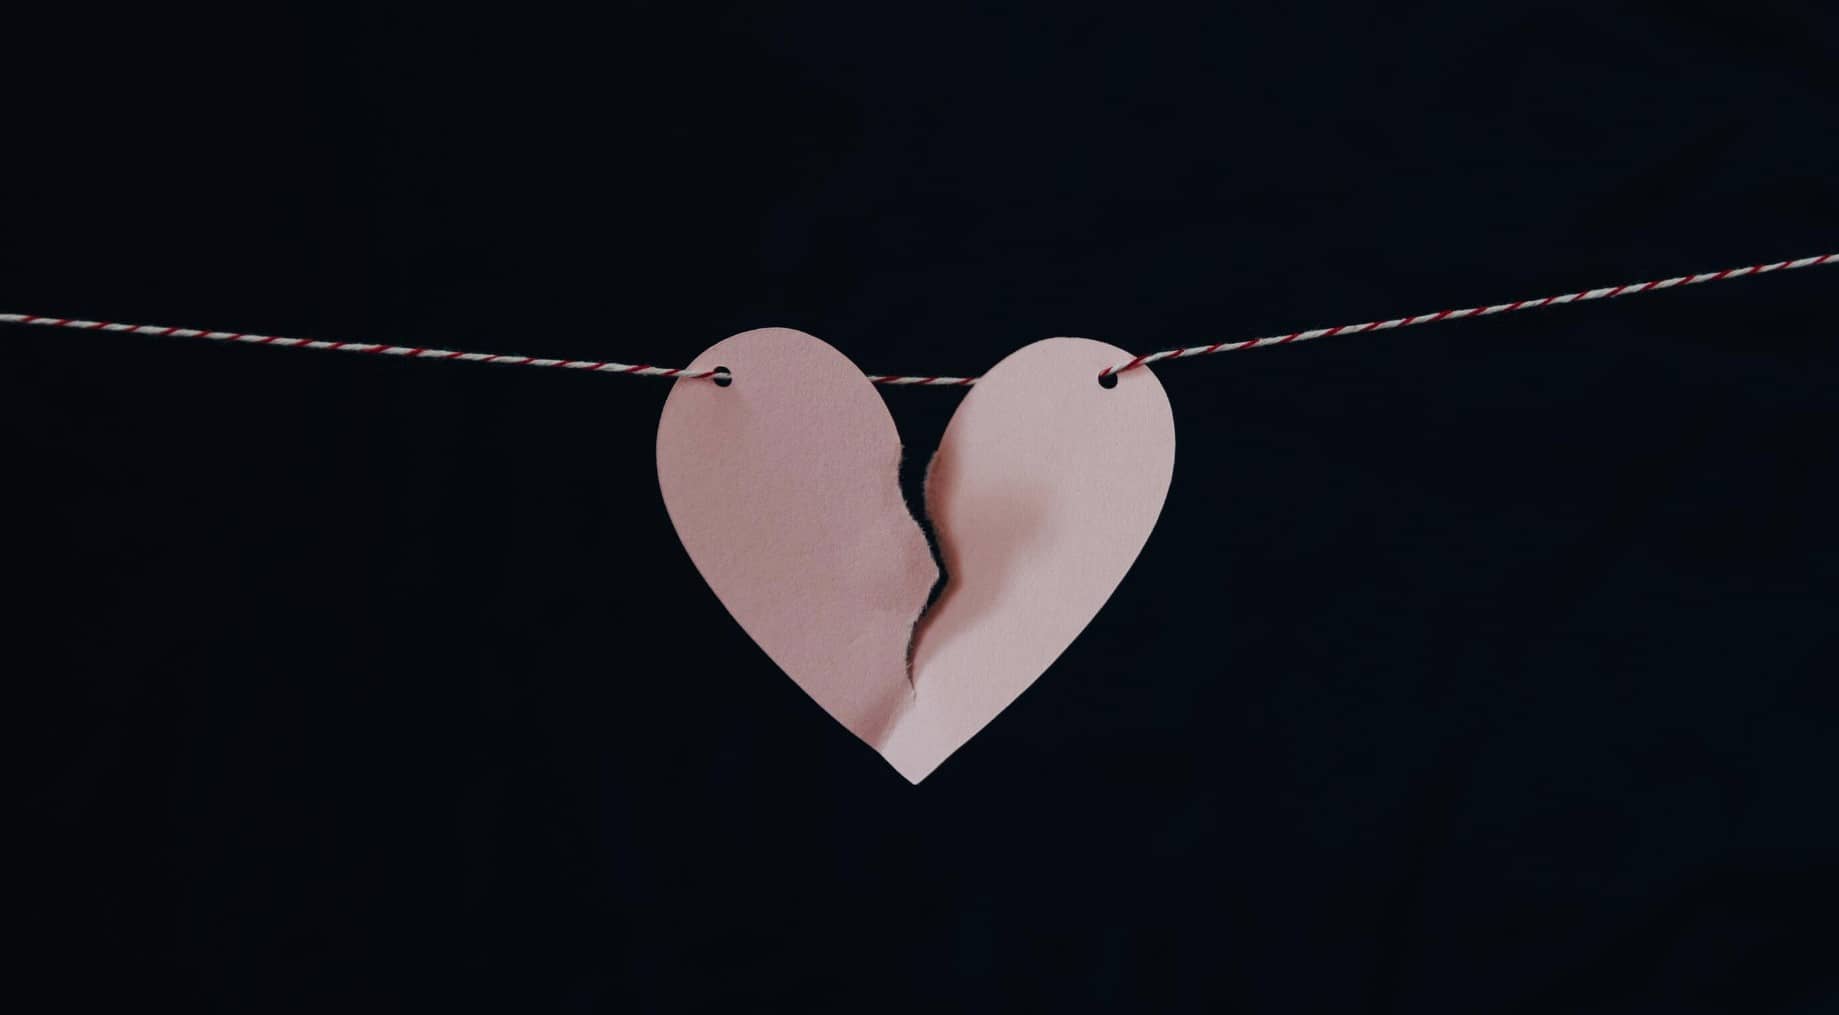 75 Sad Broken Relationship Quotes To Fix Your Heartbreak